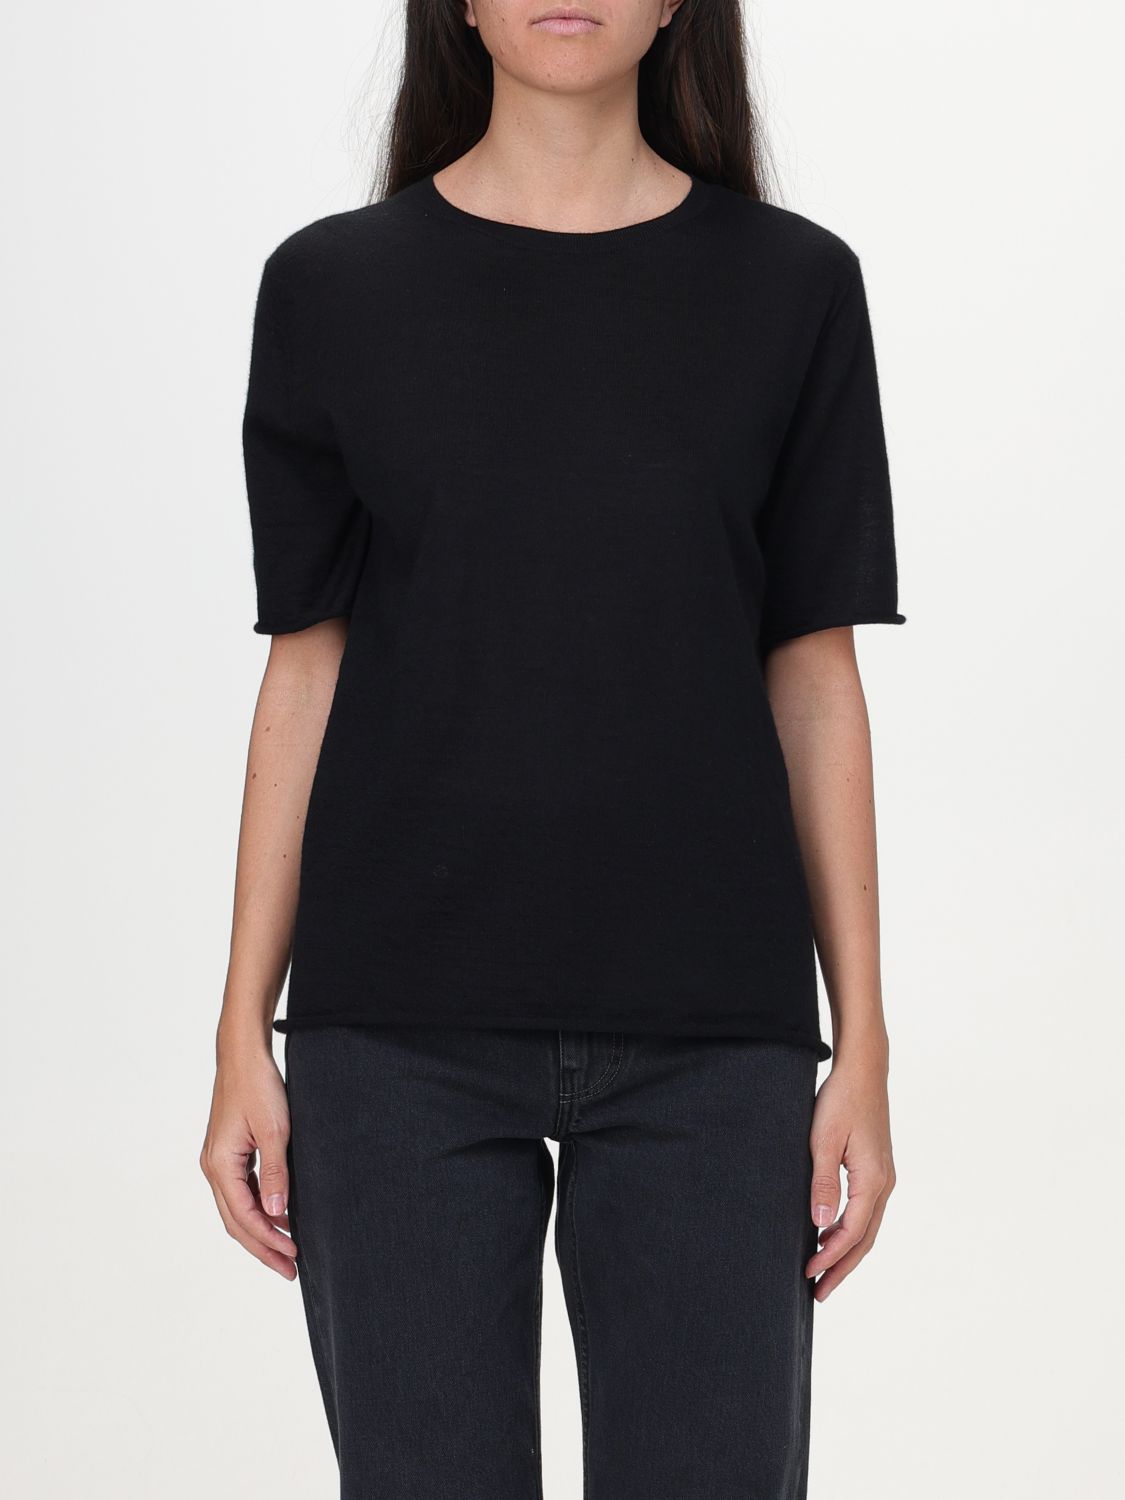 Lisa Yang Sweater LISA YANG Woman color Black